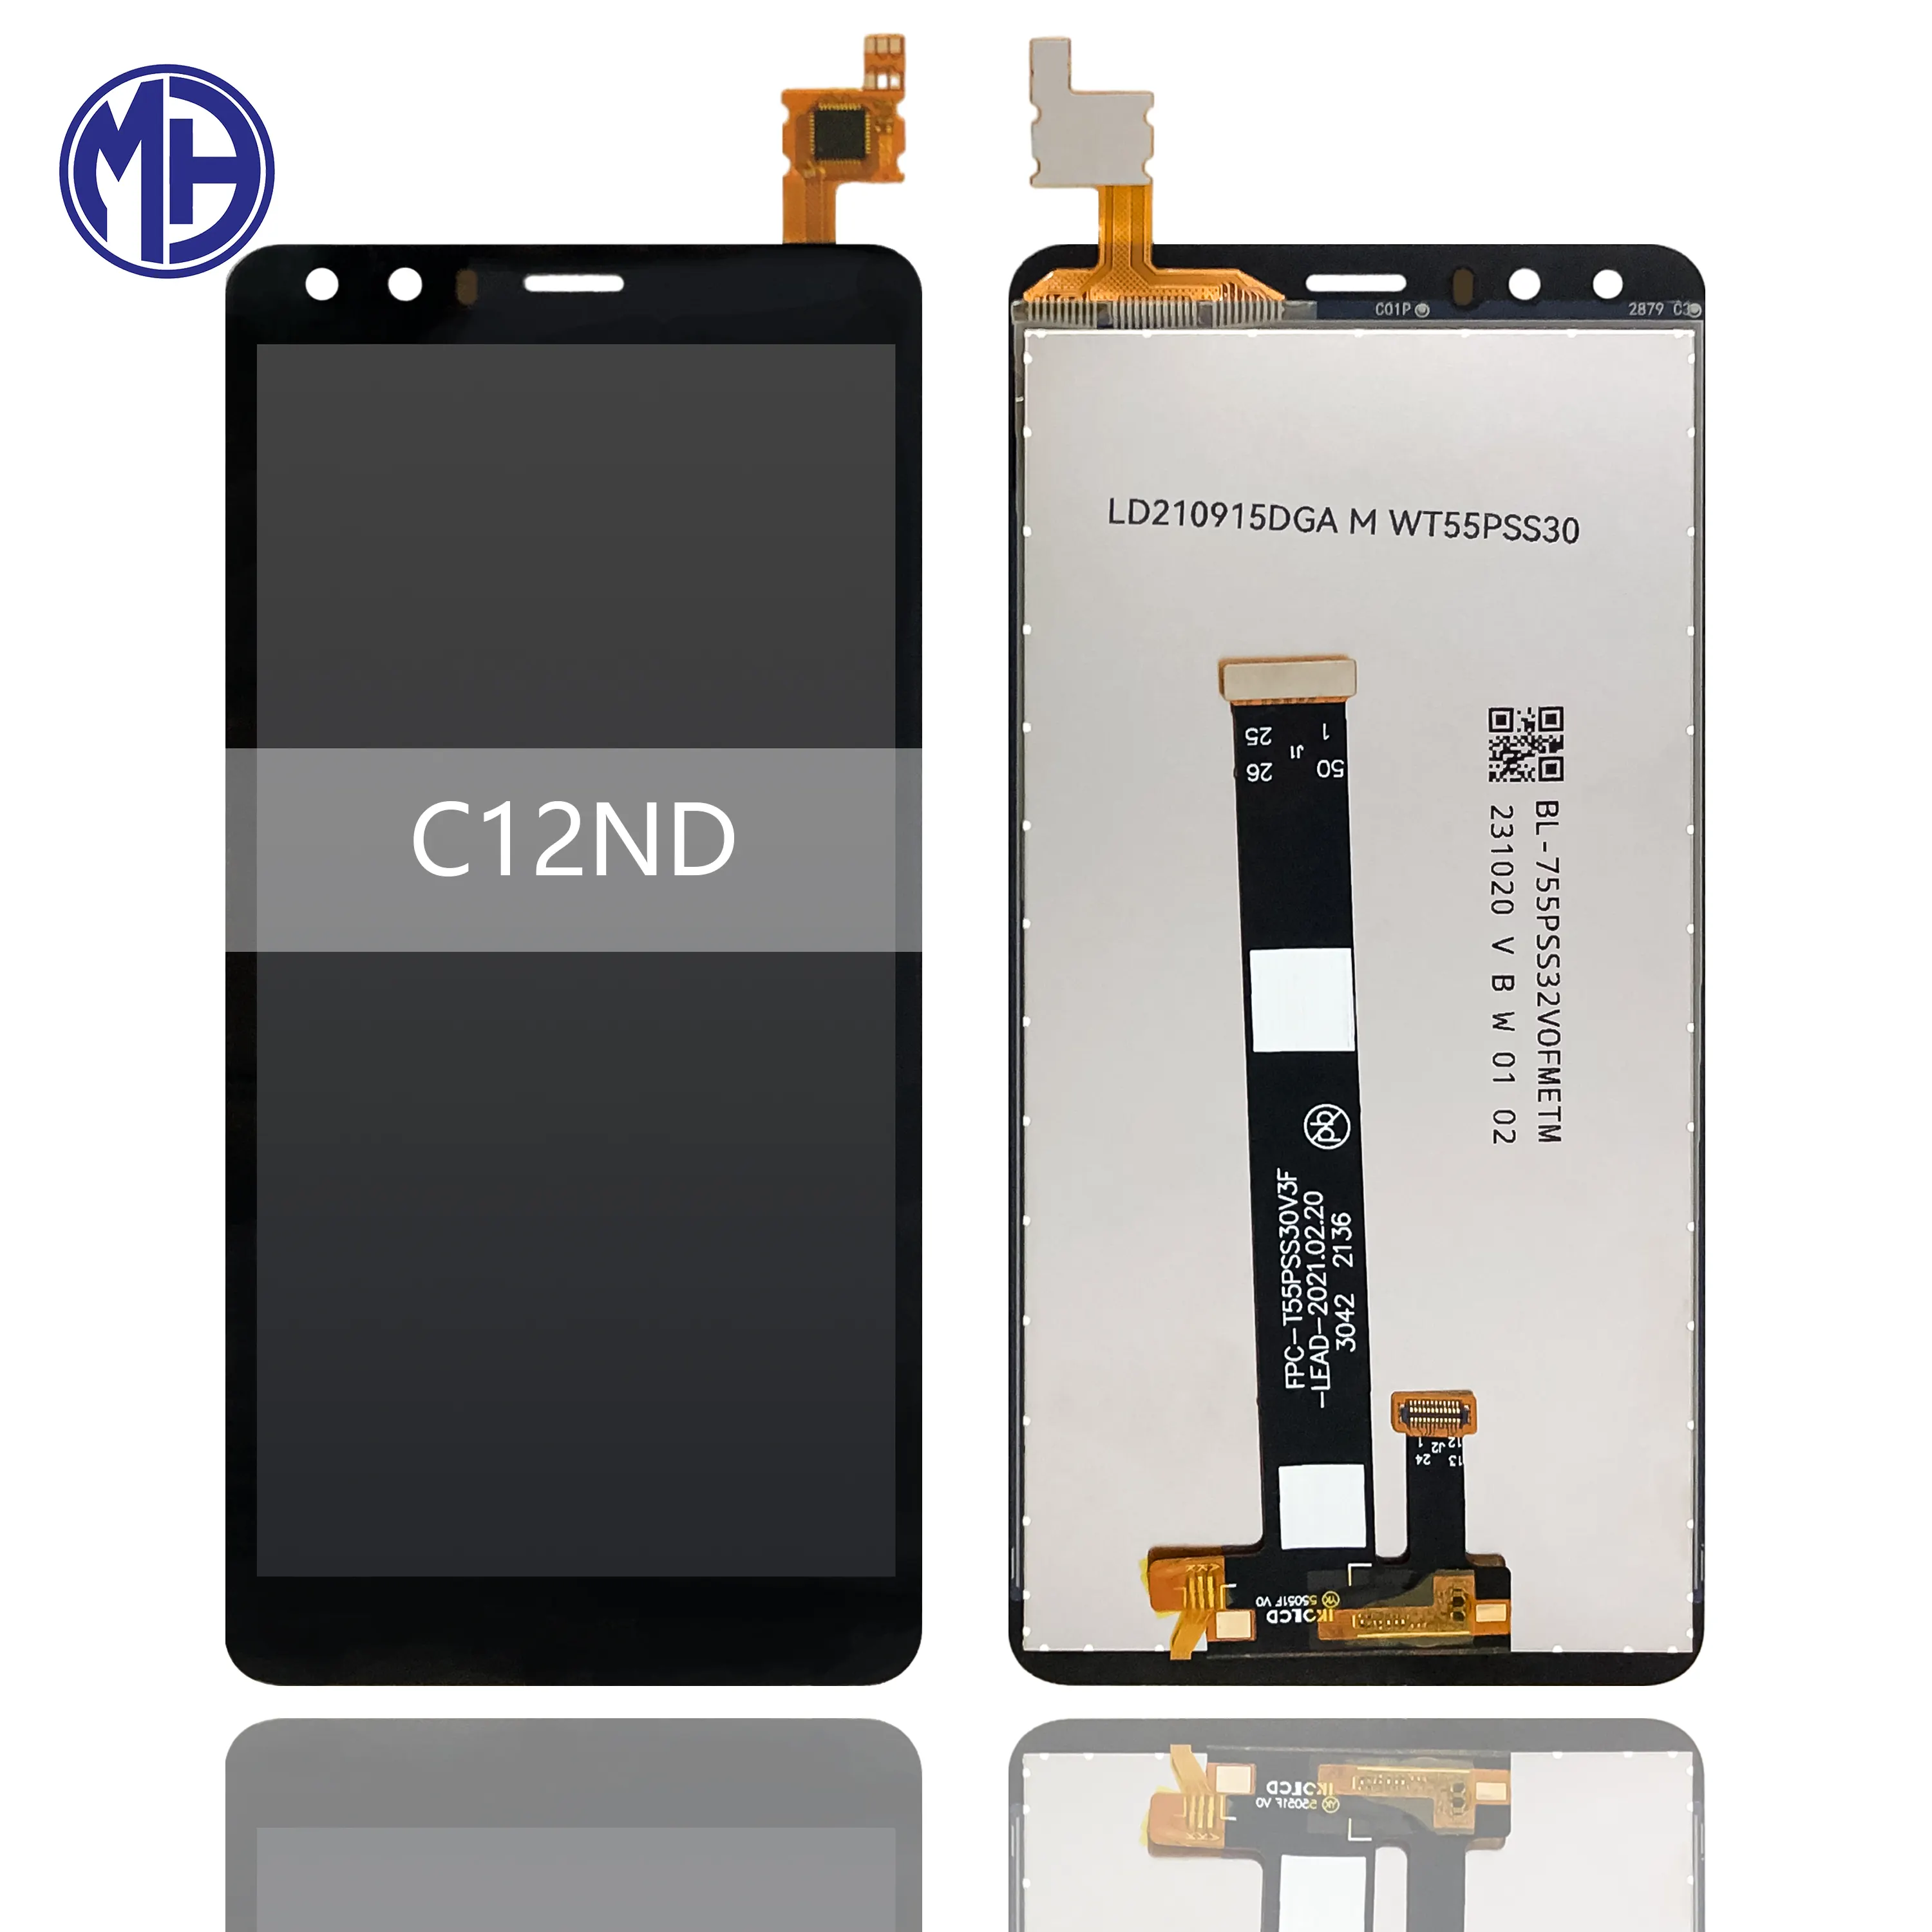 100% テスト済み携帯電話液晶画面ディスプレイ交換用NokiaC1 2NDアセンブリタッチ液晶画面